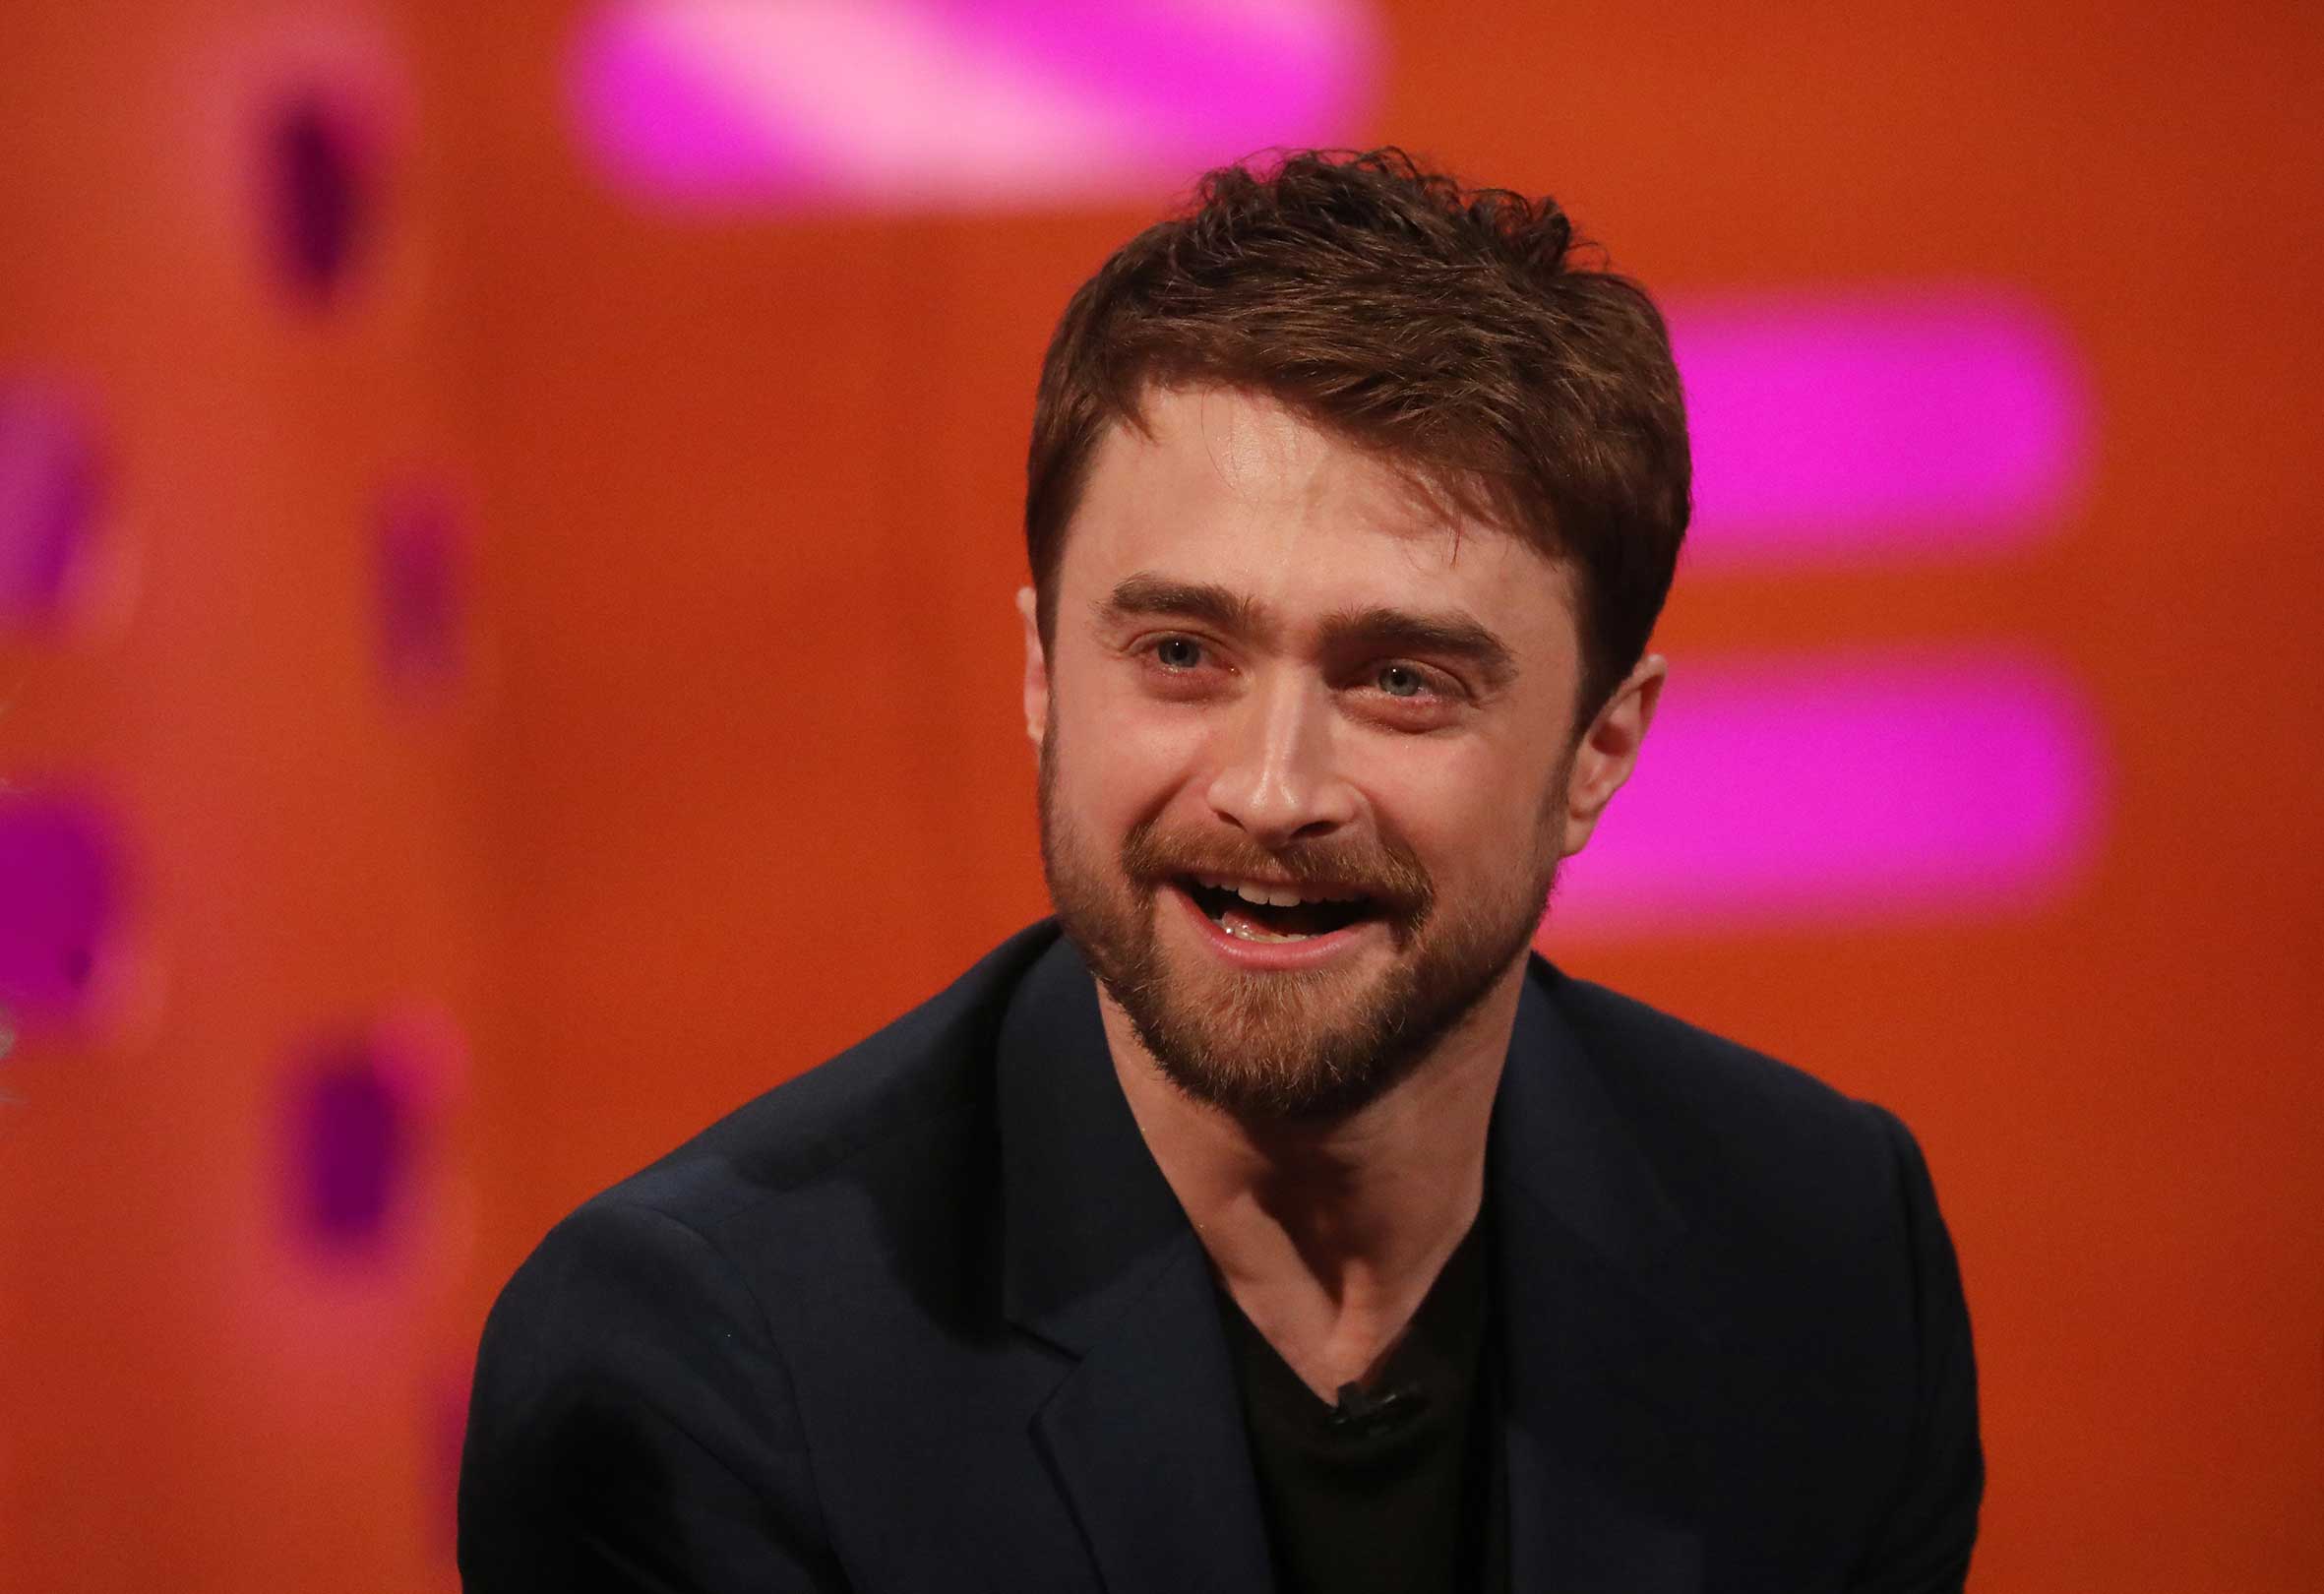 Daniel Radcliffe respondió a los comentarios transfóbicos de J.K. Rowling